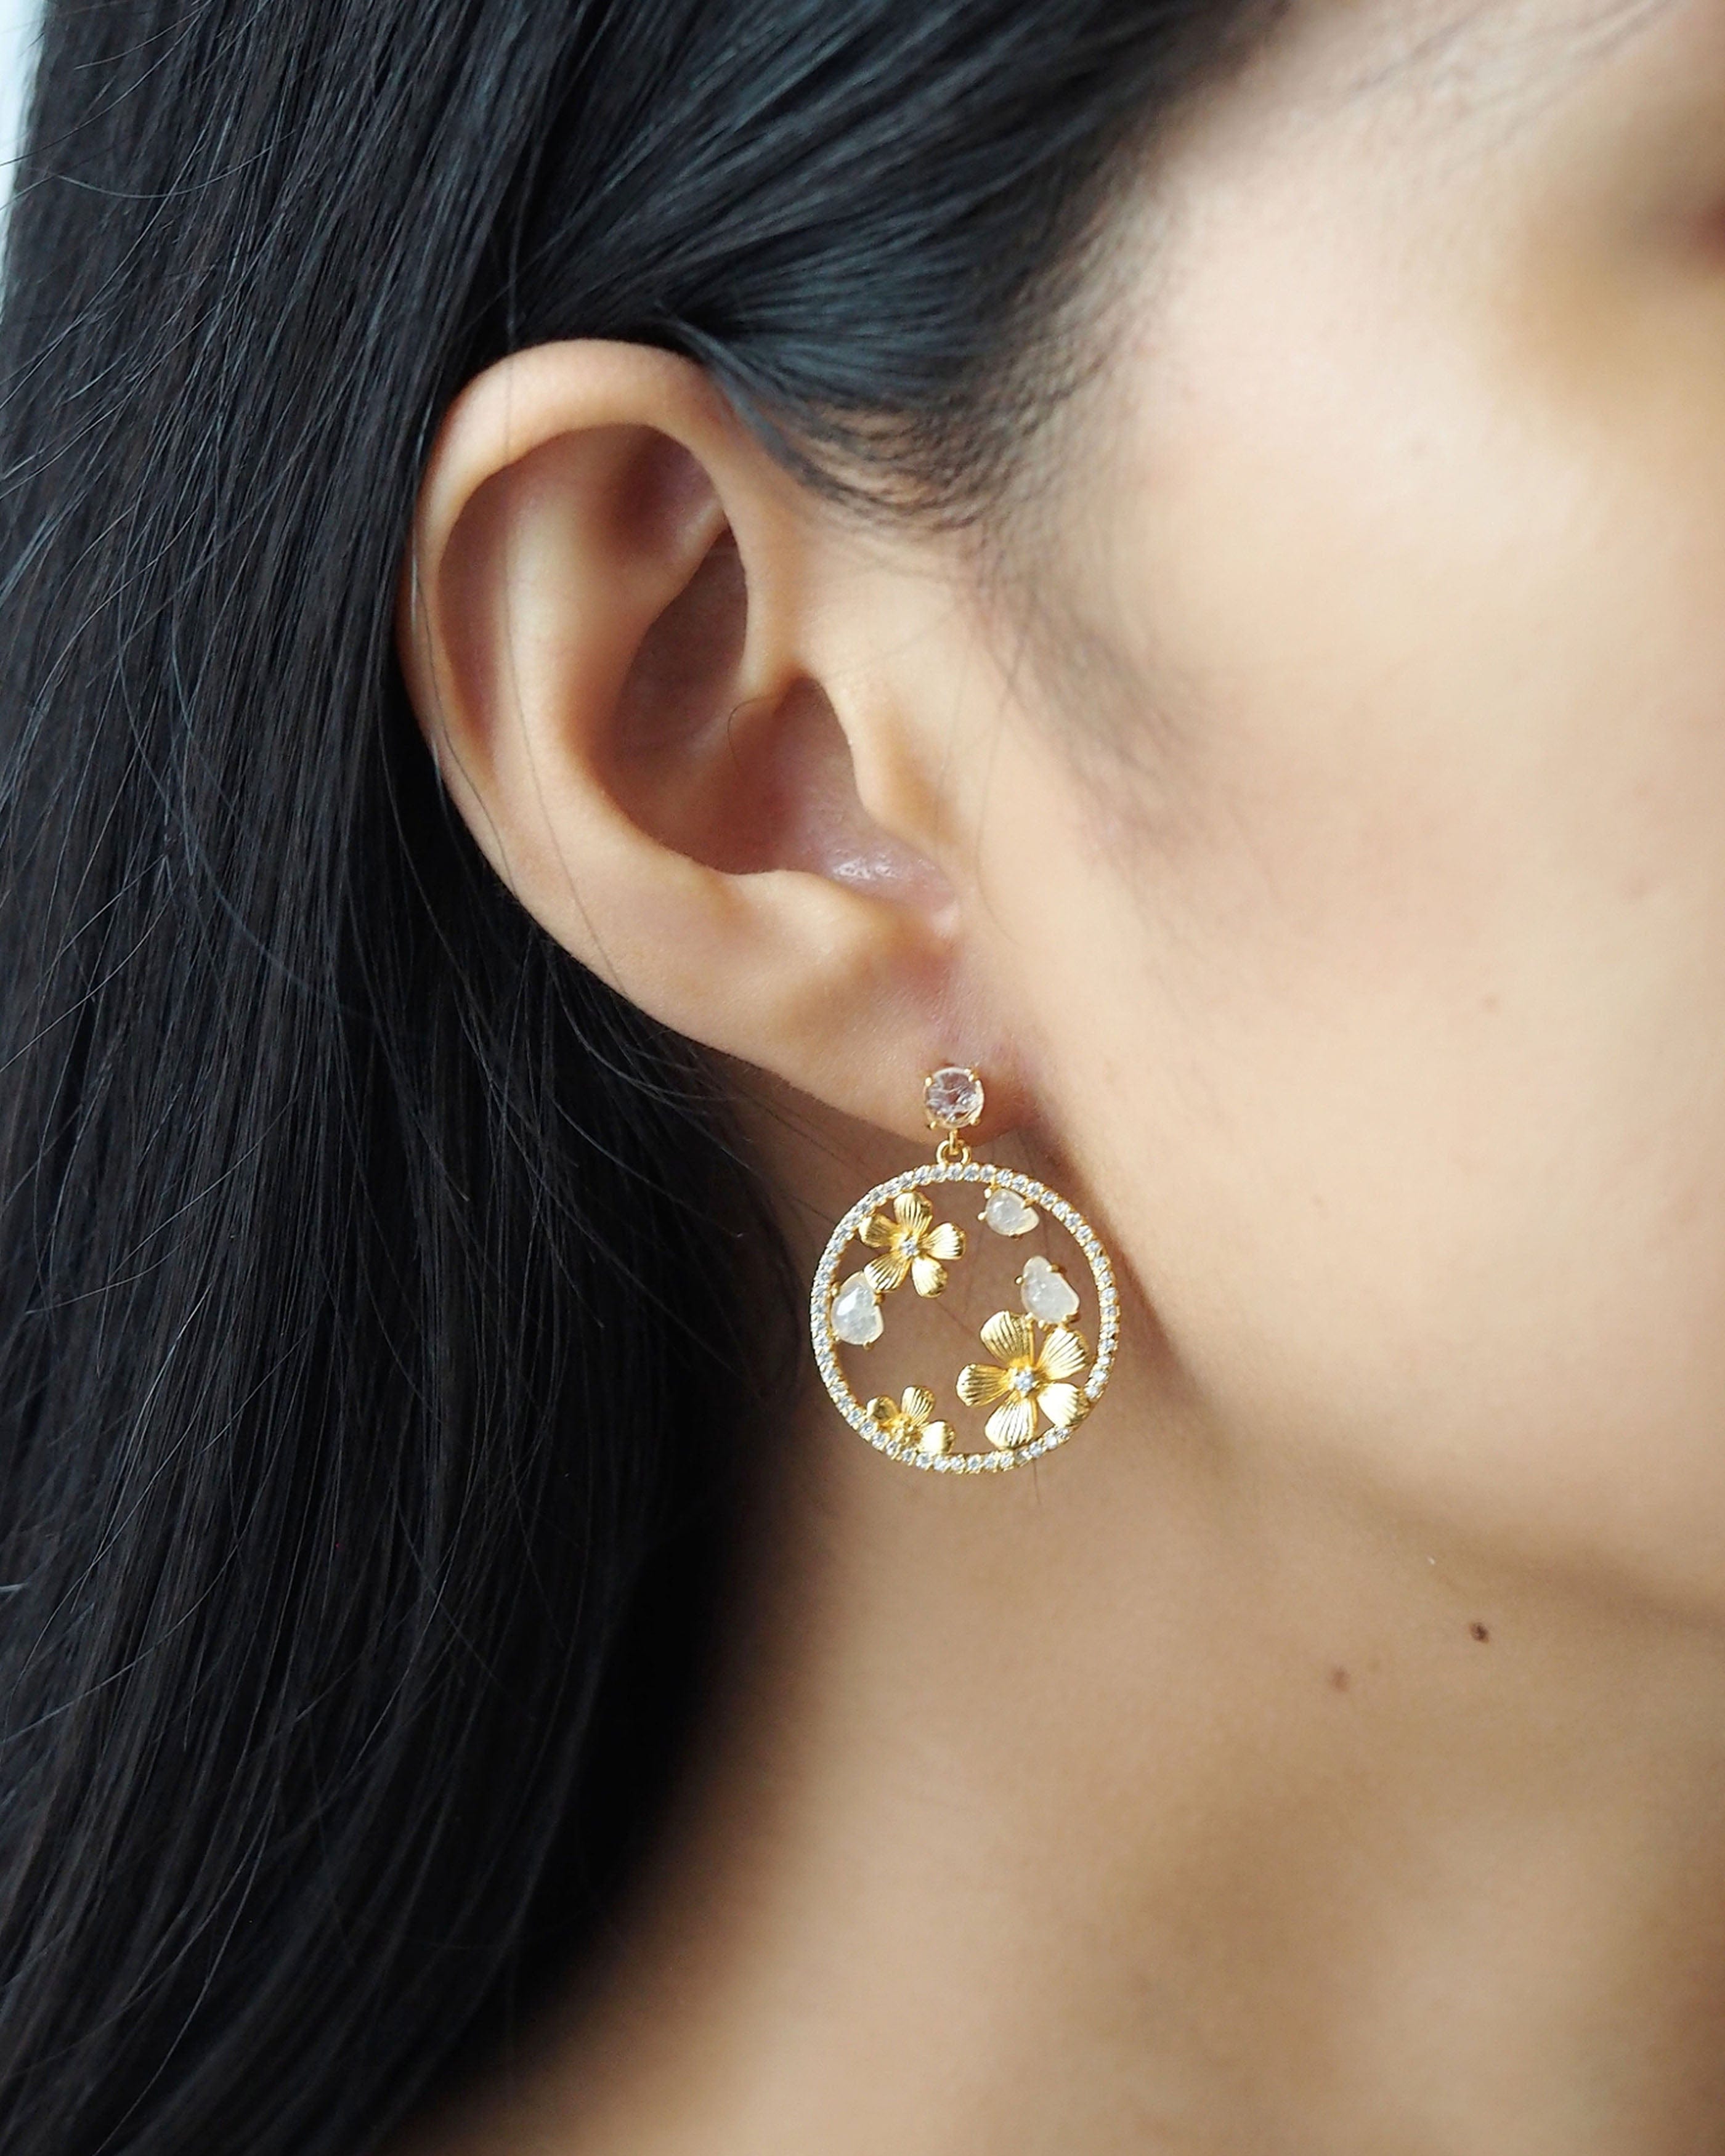 TAI JEWELRY Earrings Drop Earring With Flowers